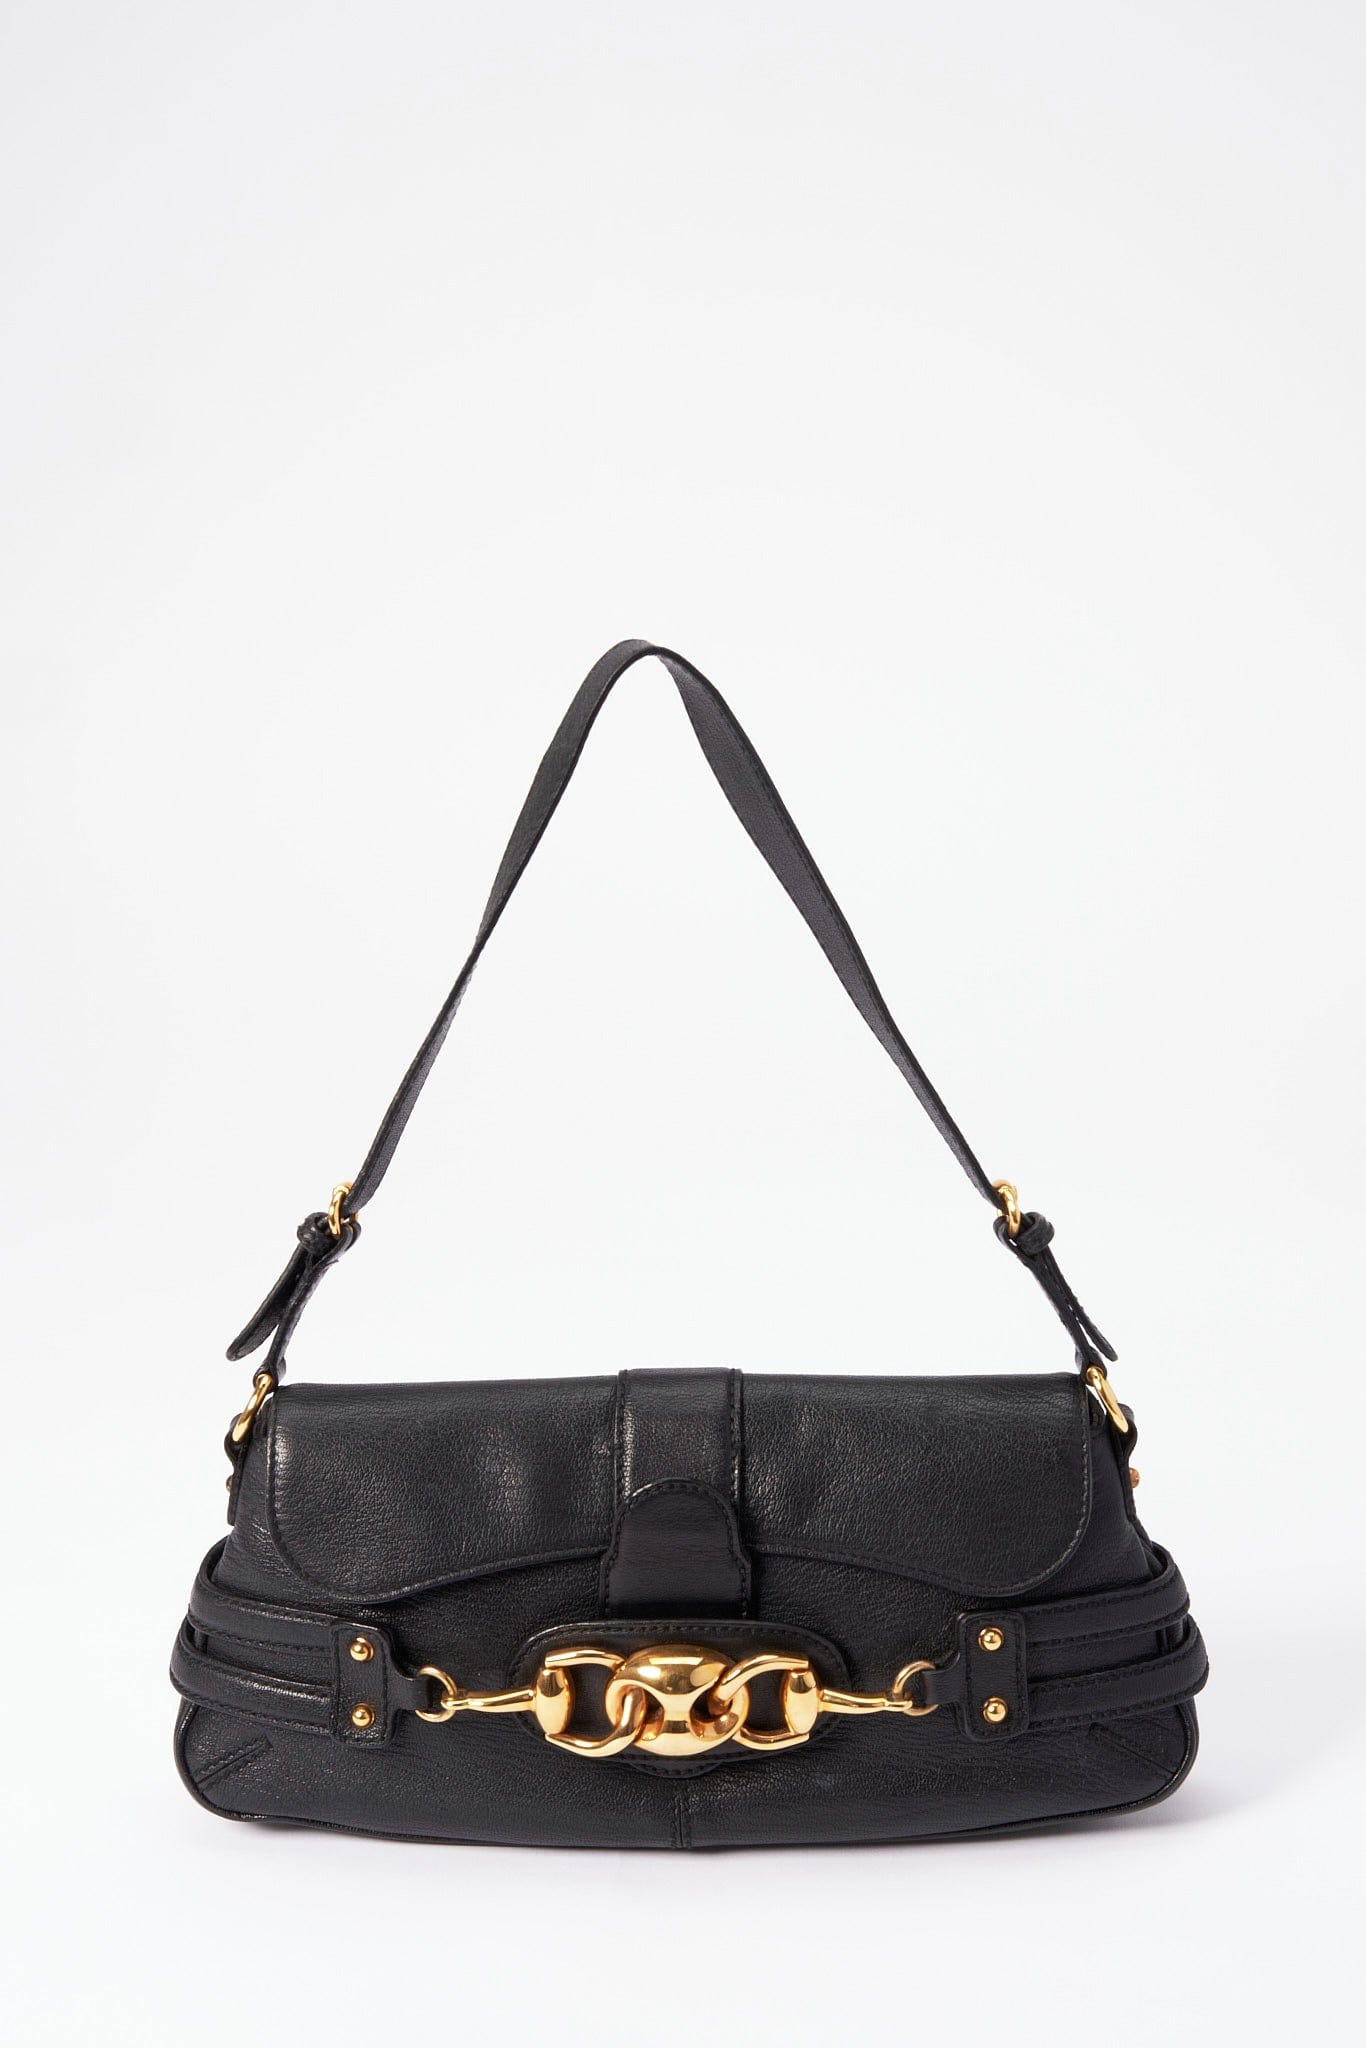 Vintage Gucci Shoulder Bag – The Hosta